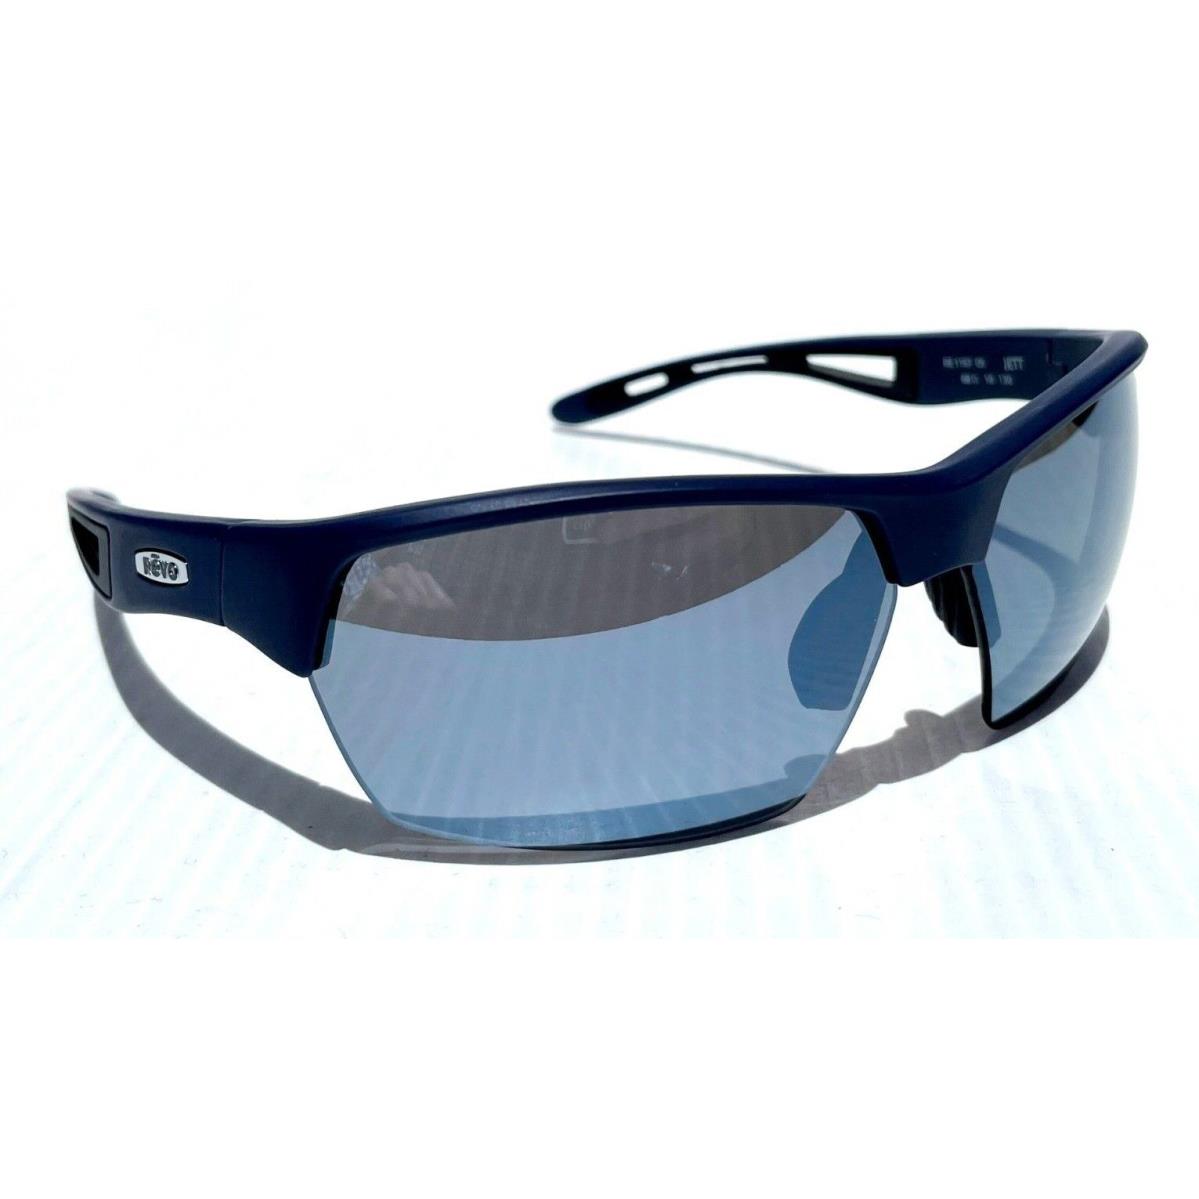 Revo sunglasses JETT - Navy Frame, Gray Lens 7